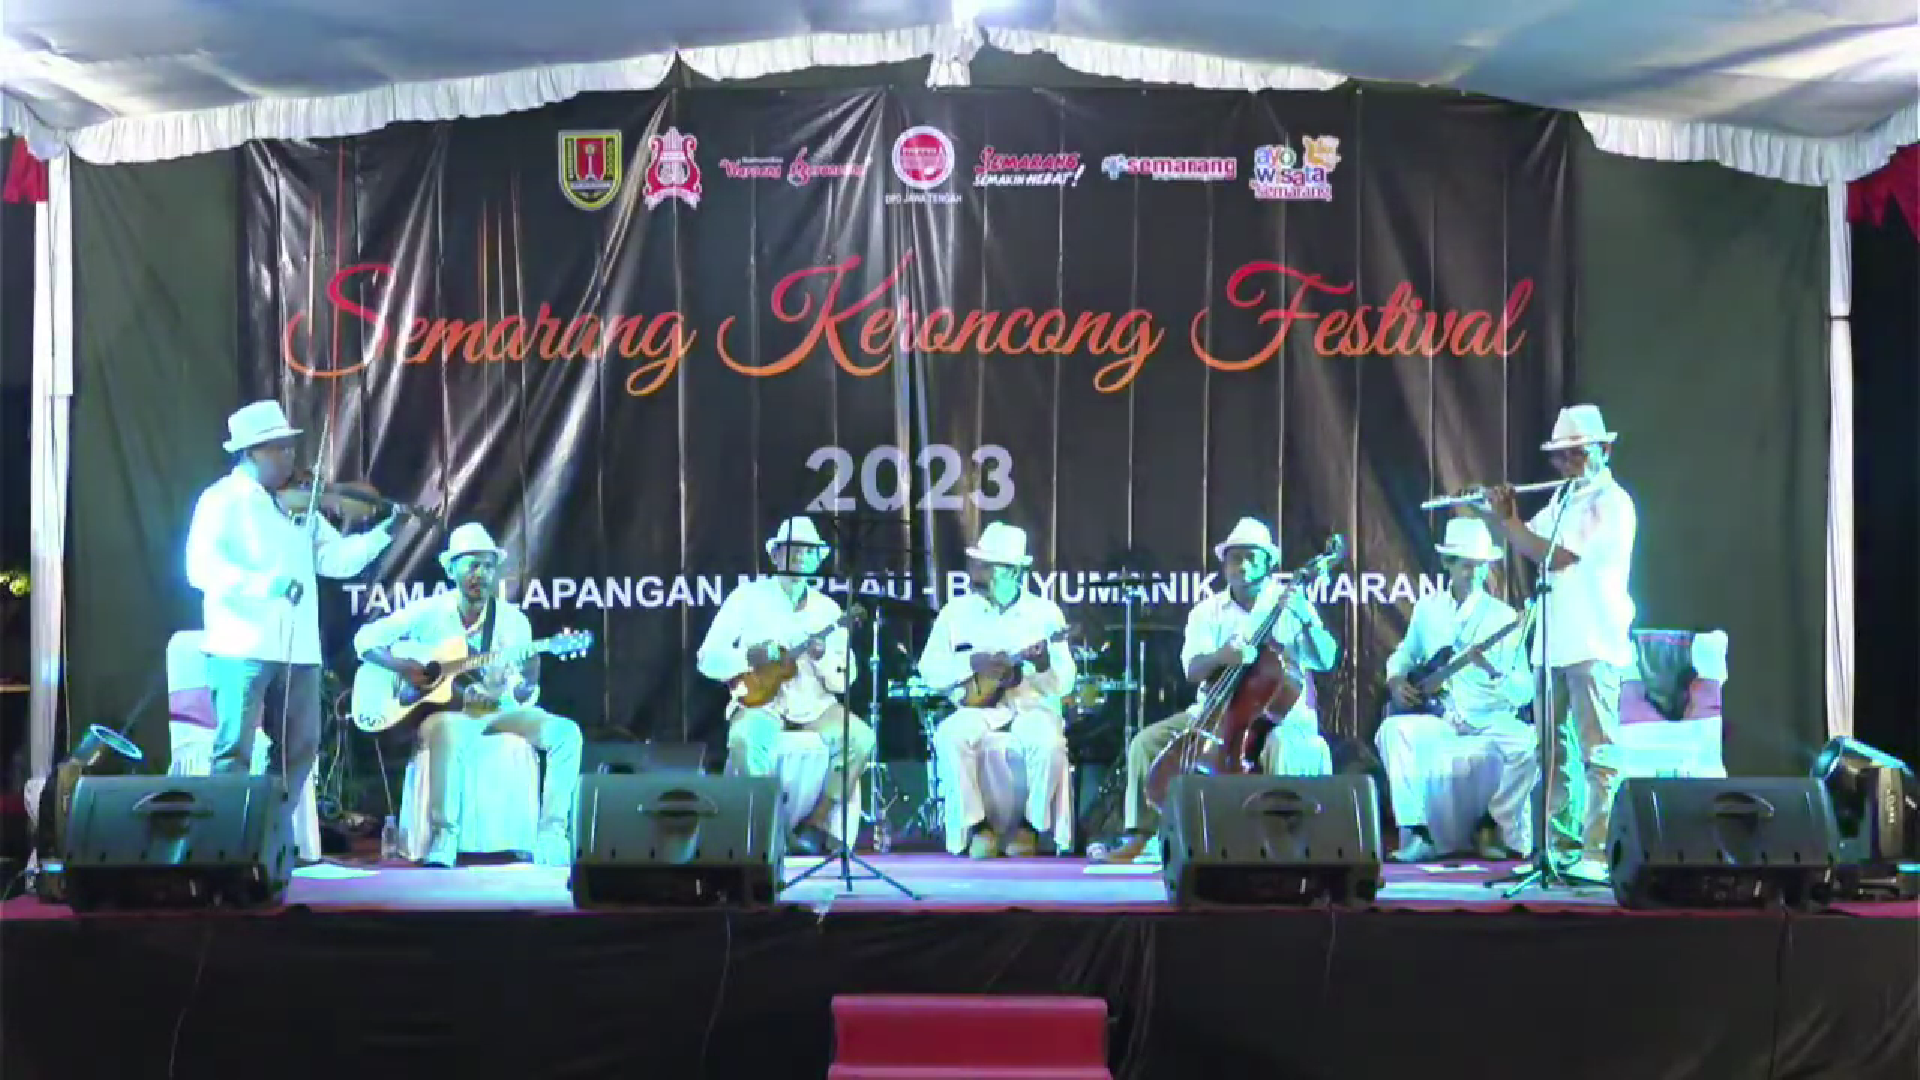 Semarang Keroncong Festival